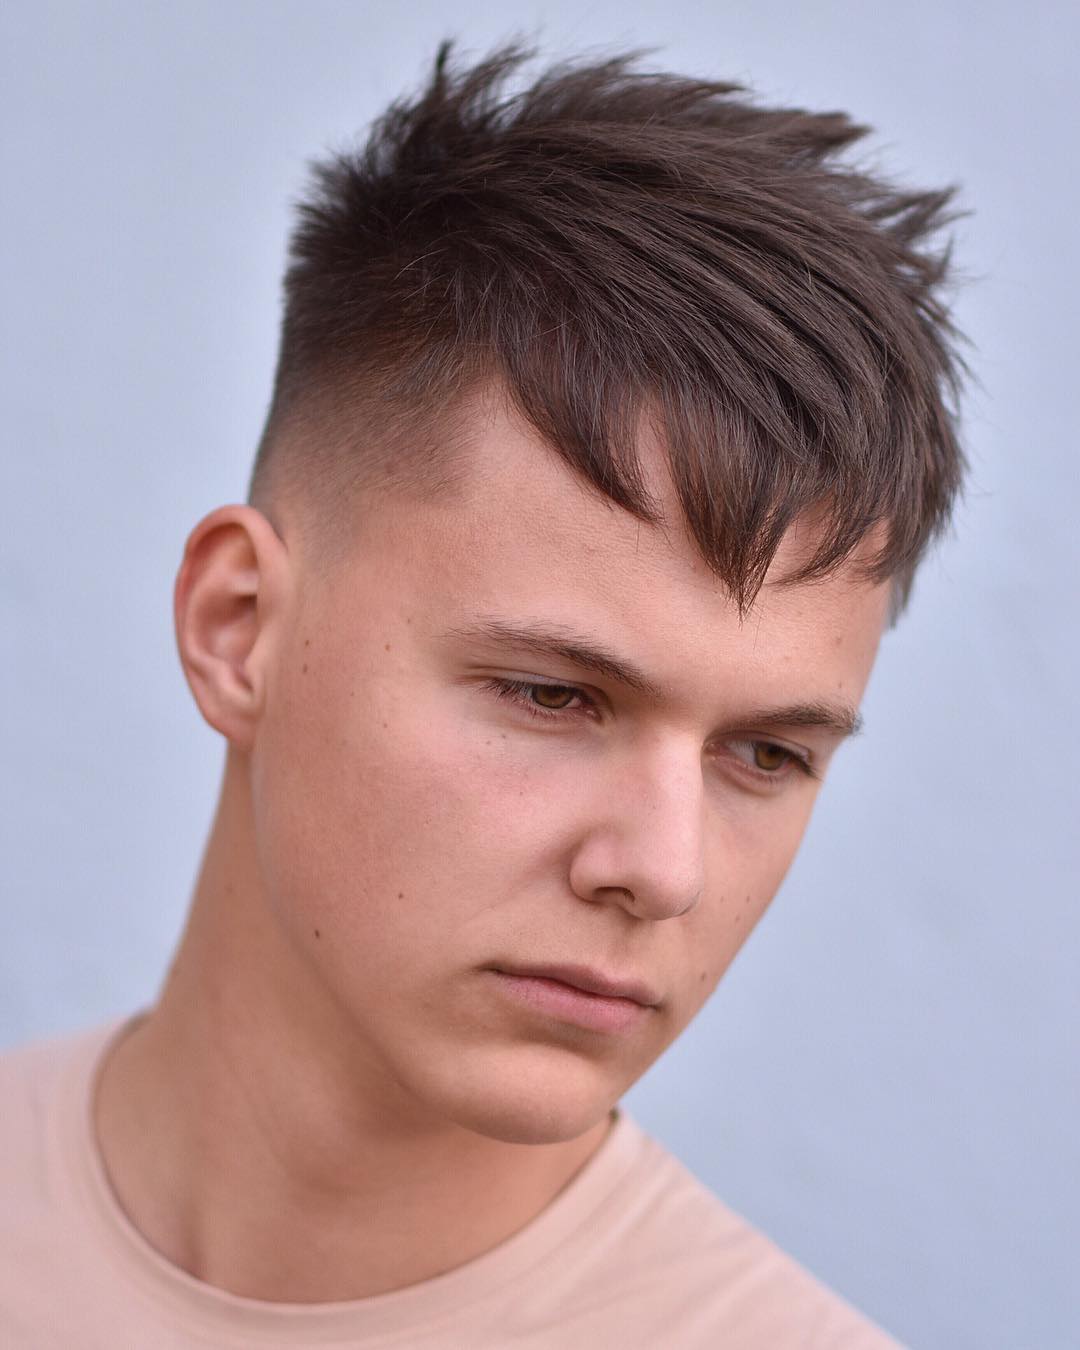 Молодежная прическа для парня с короткими волосами фото